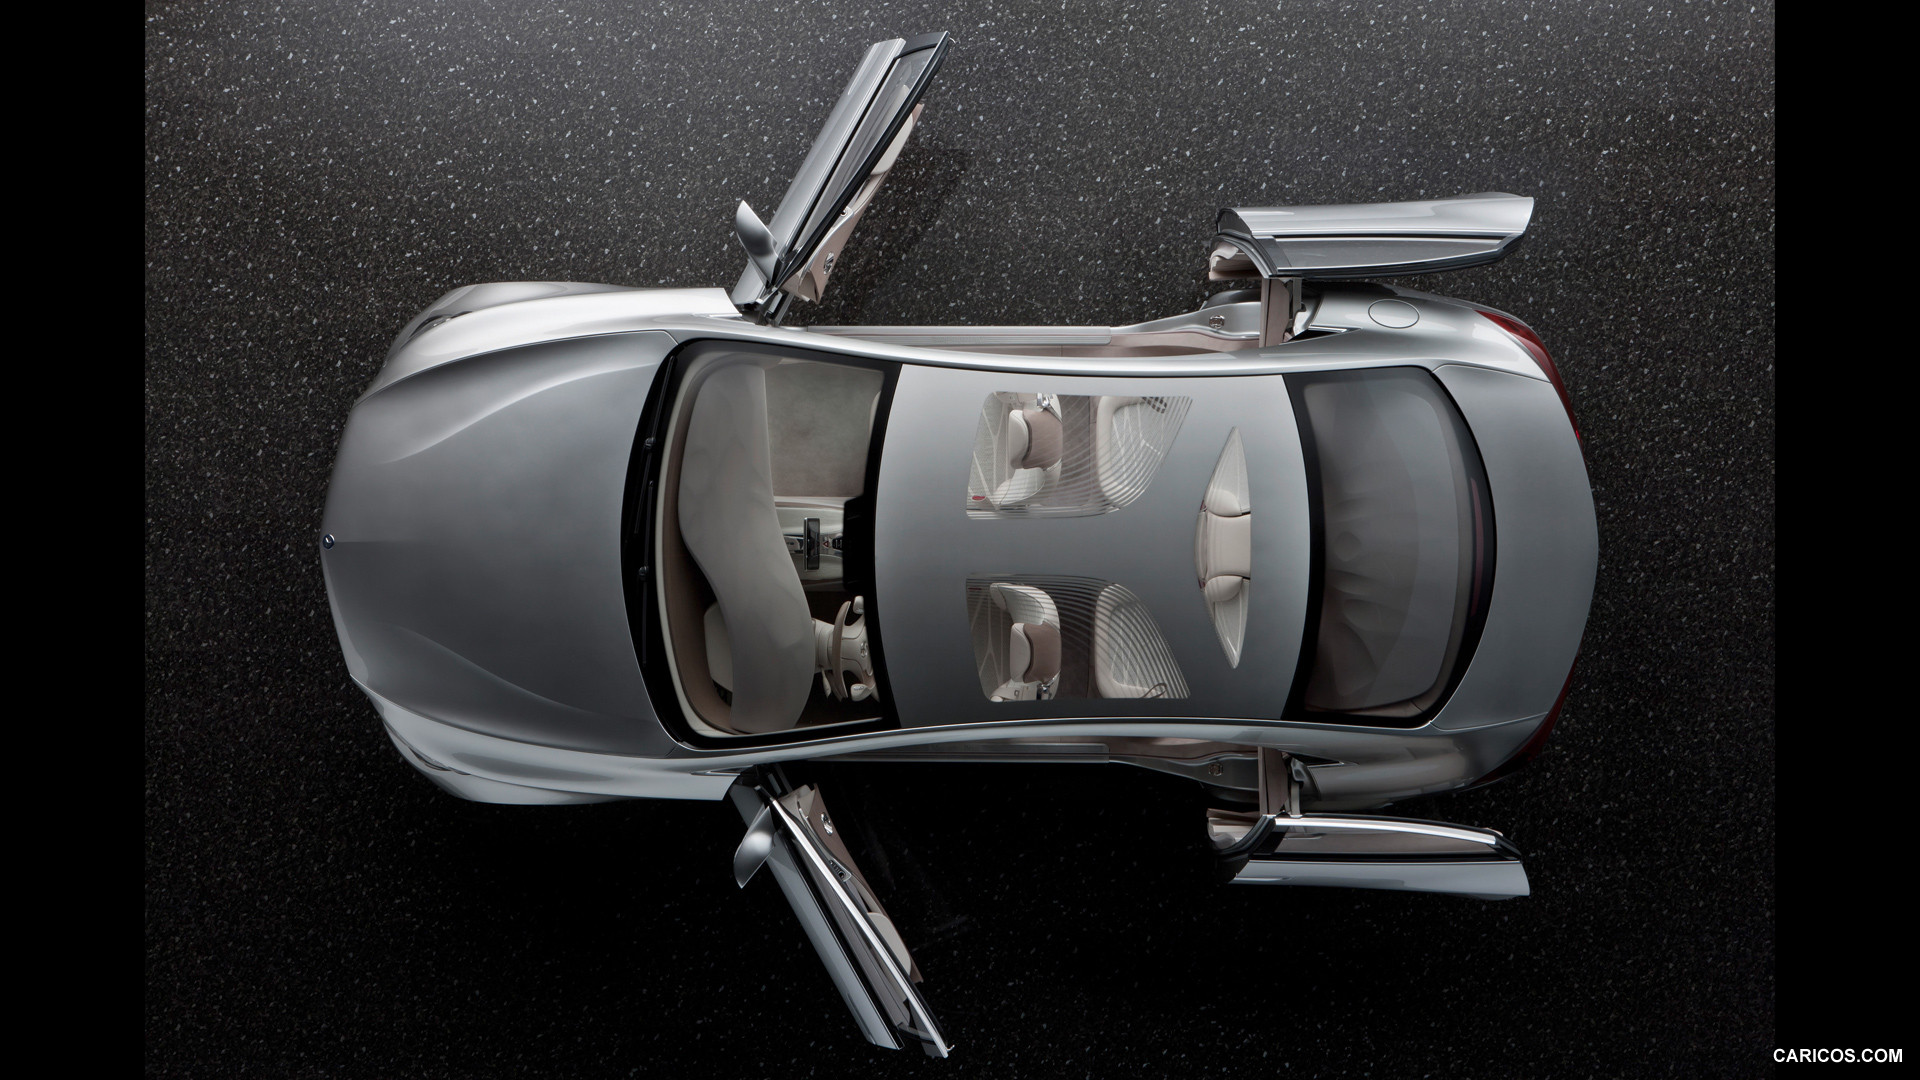 Mercedes-Benz F800 Style Concept (2010) - Doors Open - Top, #69 of 120